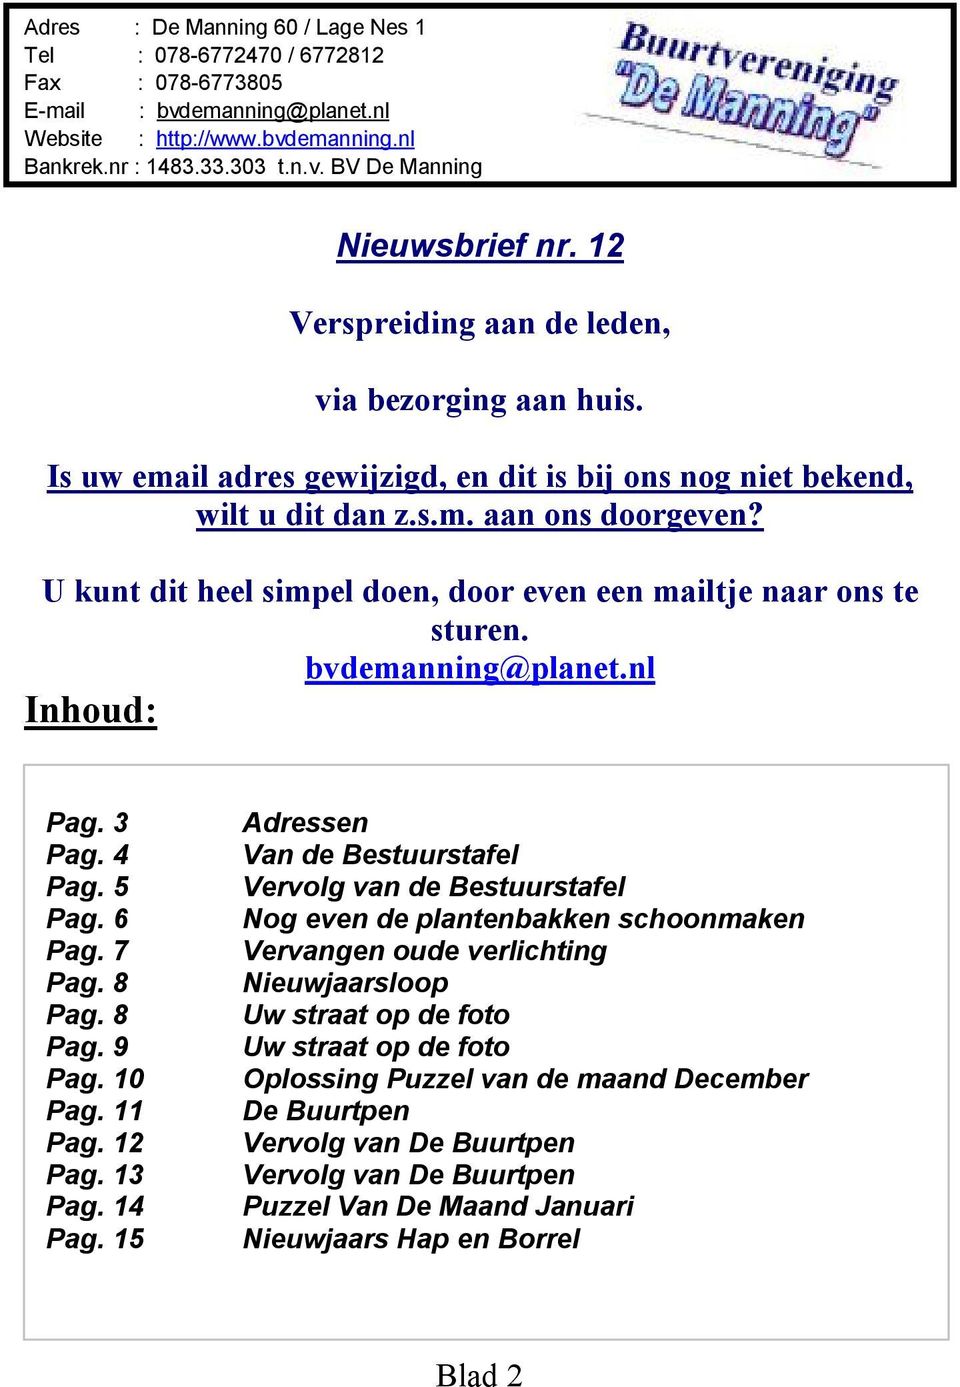 U kunt dit heel simpel doen, door even een mailtje naar ons te sturen. bvdemanning@planet.nl Inhoud: Pag. 3 Pag. 4 Pag. 5 Pag. 6 Pag. 7 Pag. 8 Pag. 8 Pag. 9 Pag. 10 Pag. 11 Pag. 12 Pag. 13 Pag.